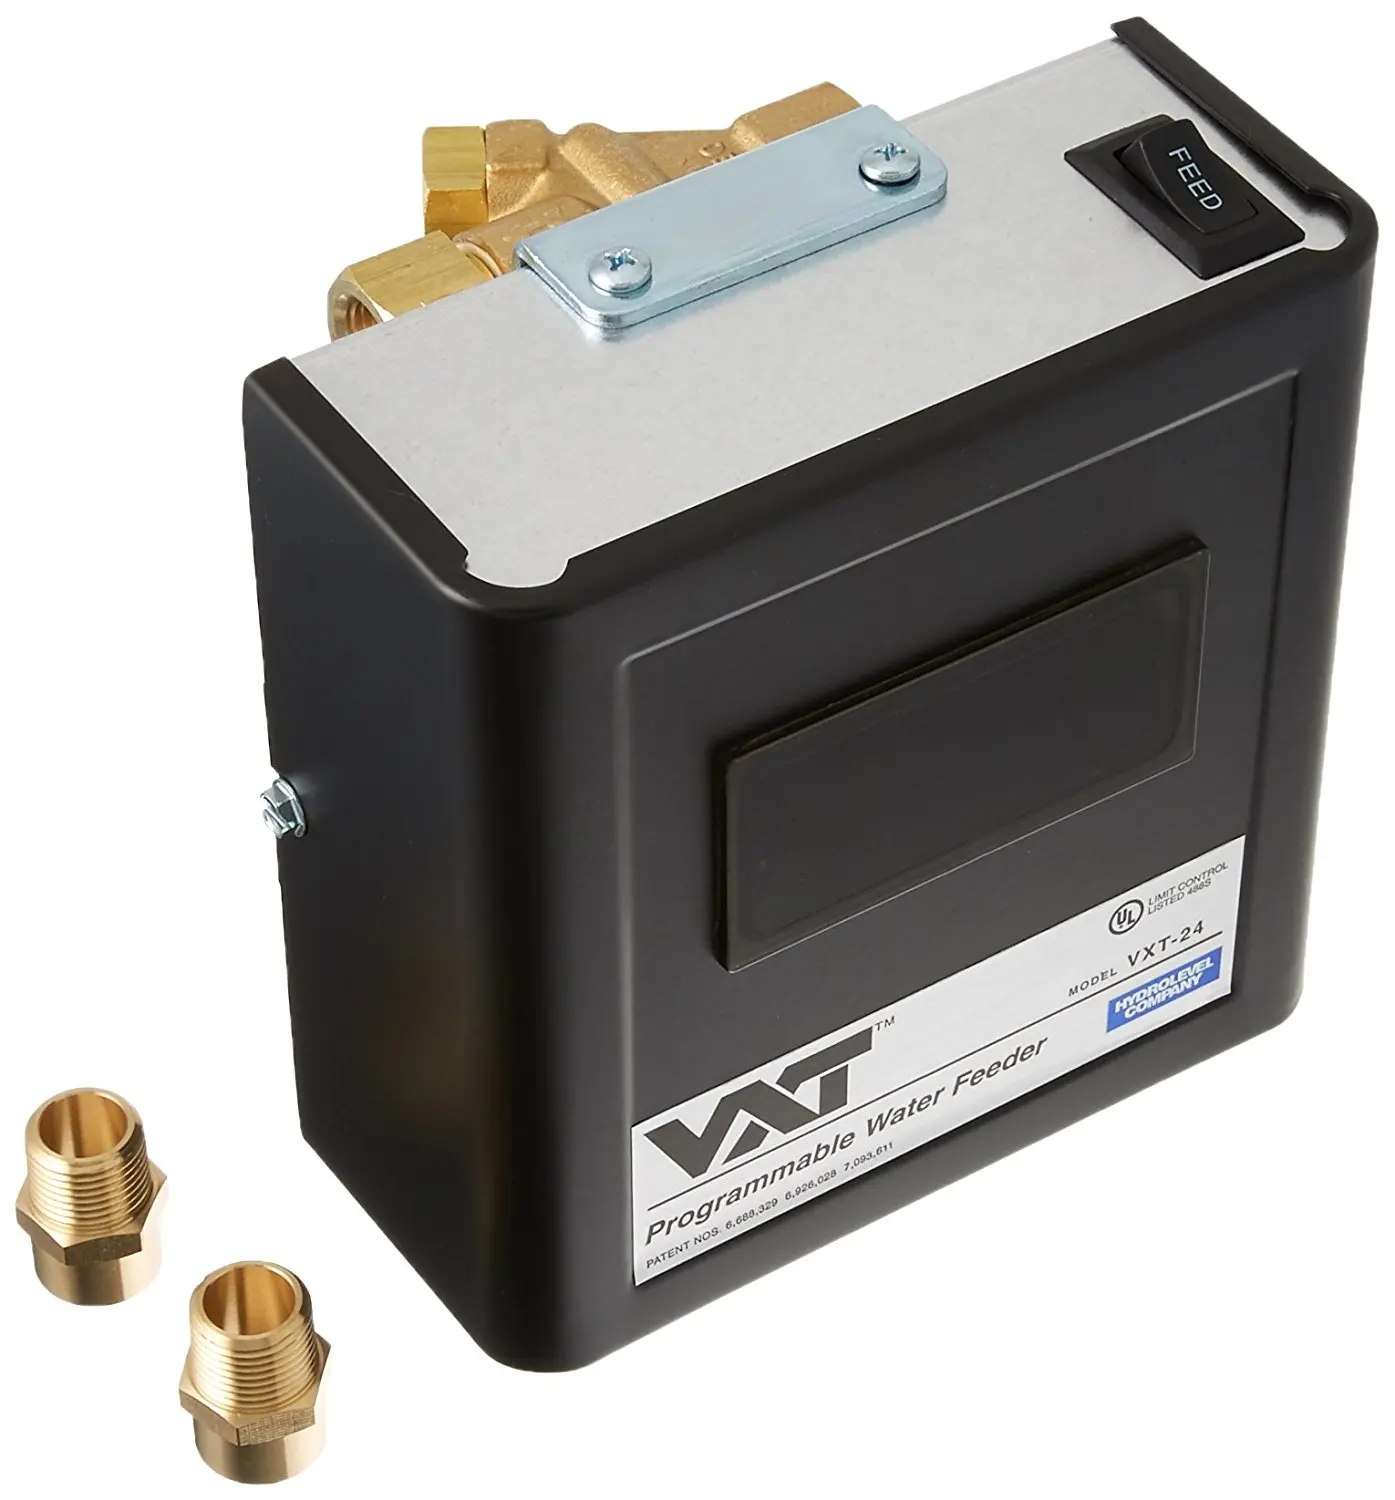 Vxt 24 water feeder